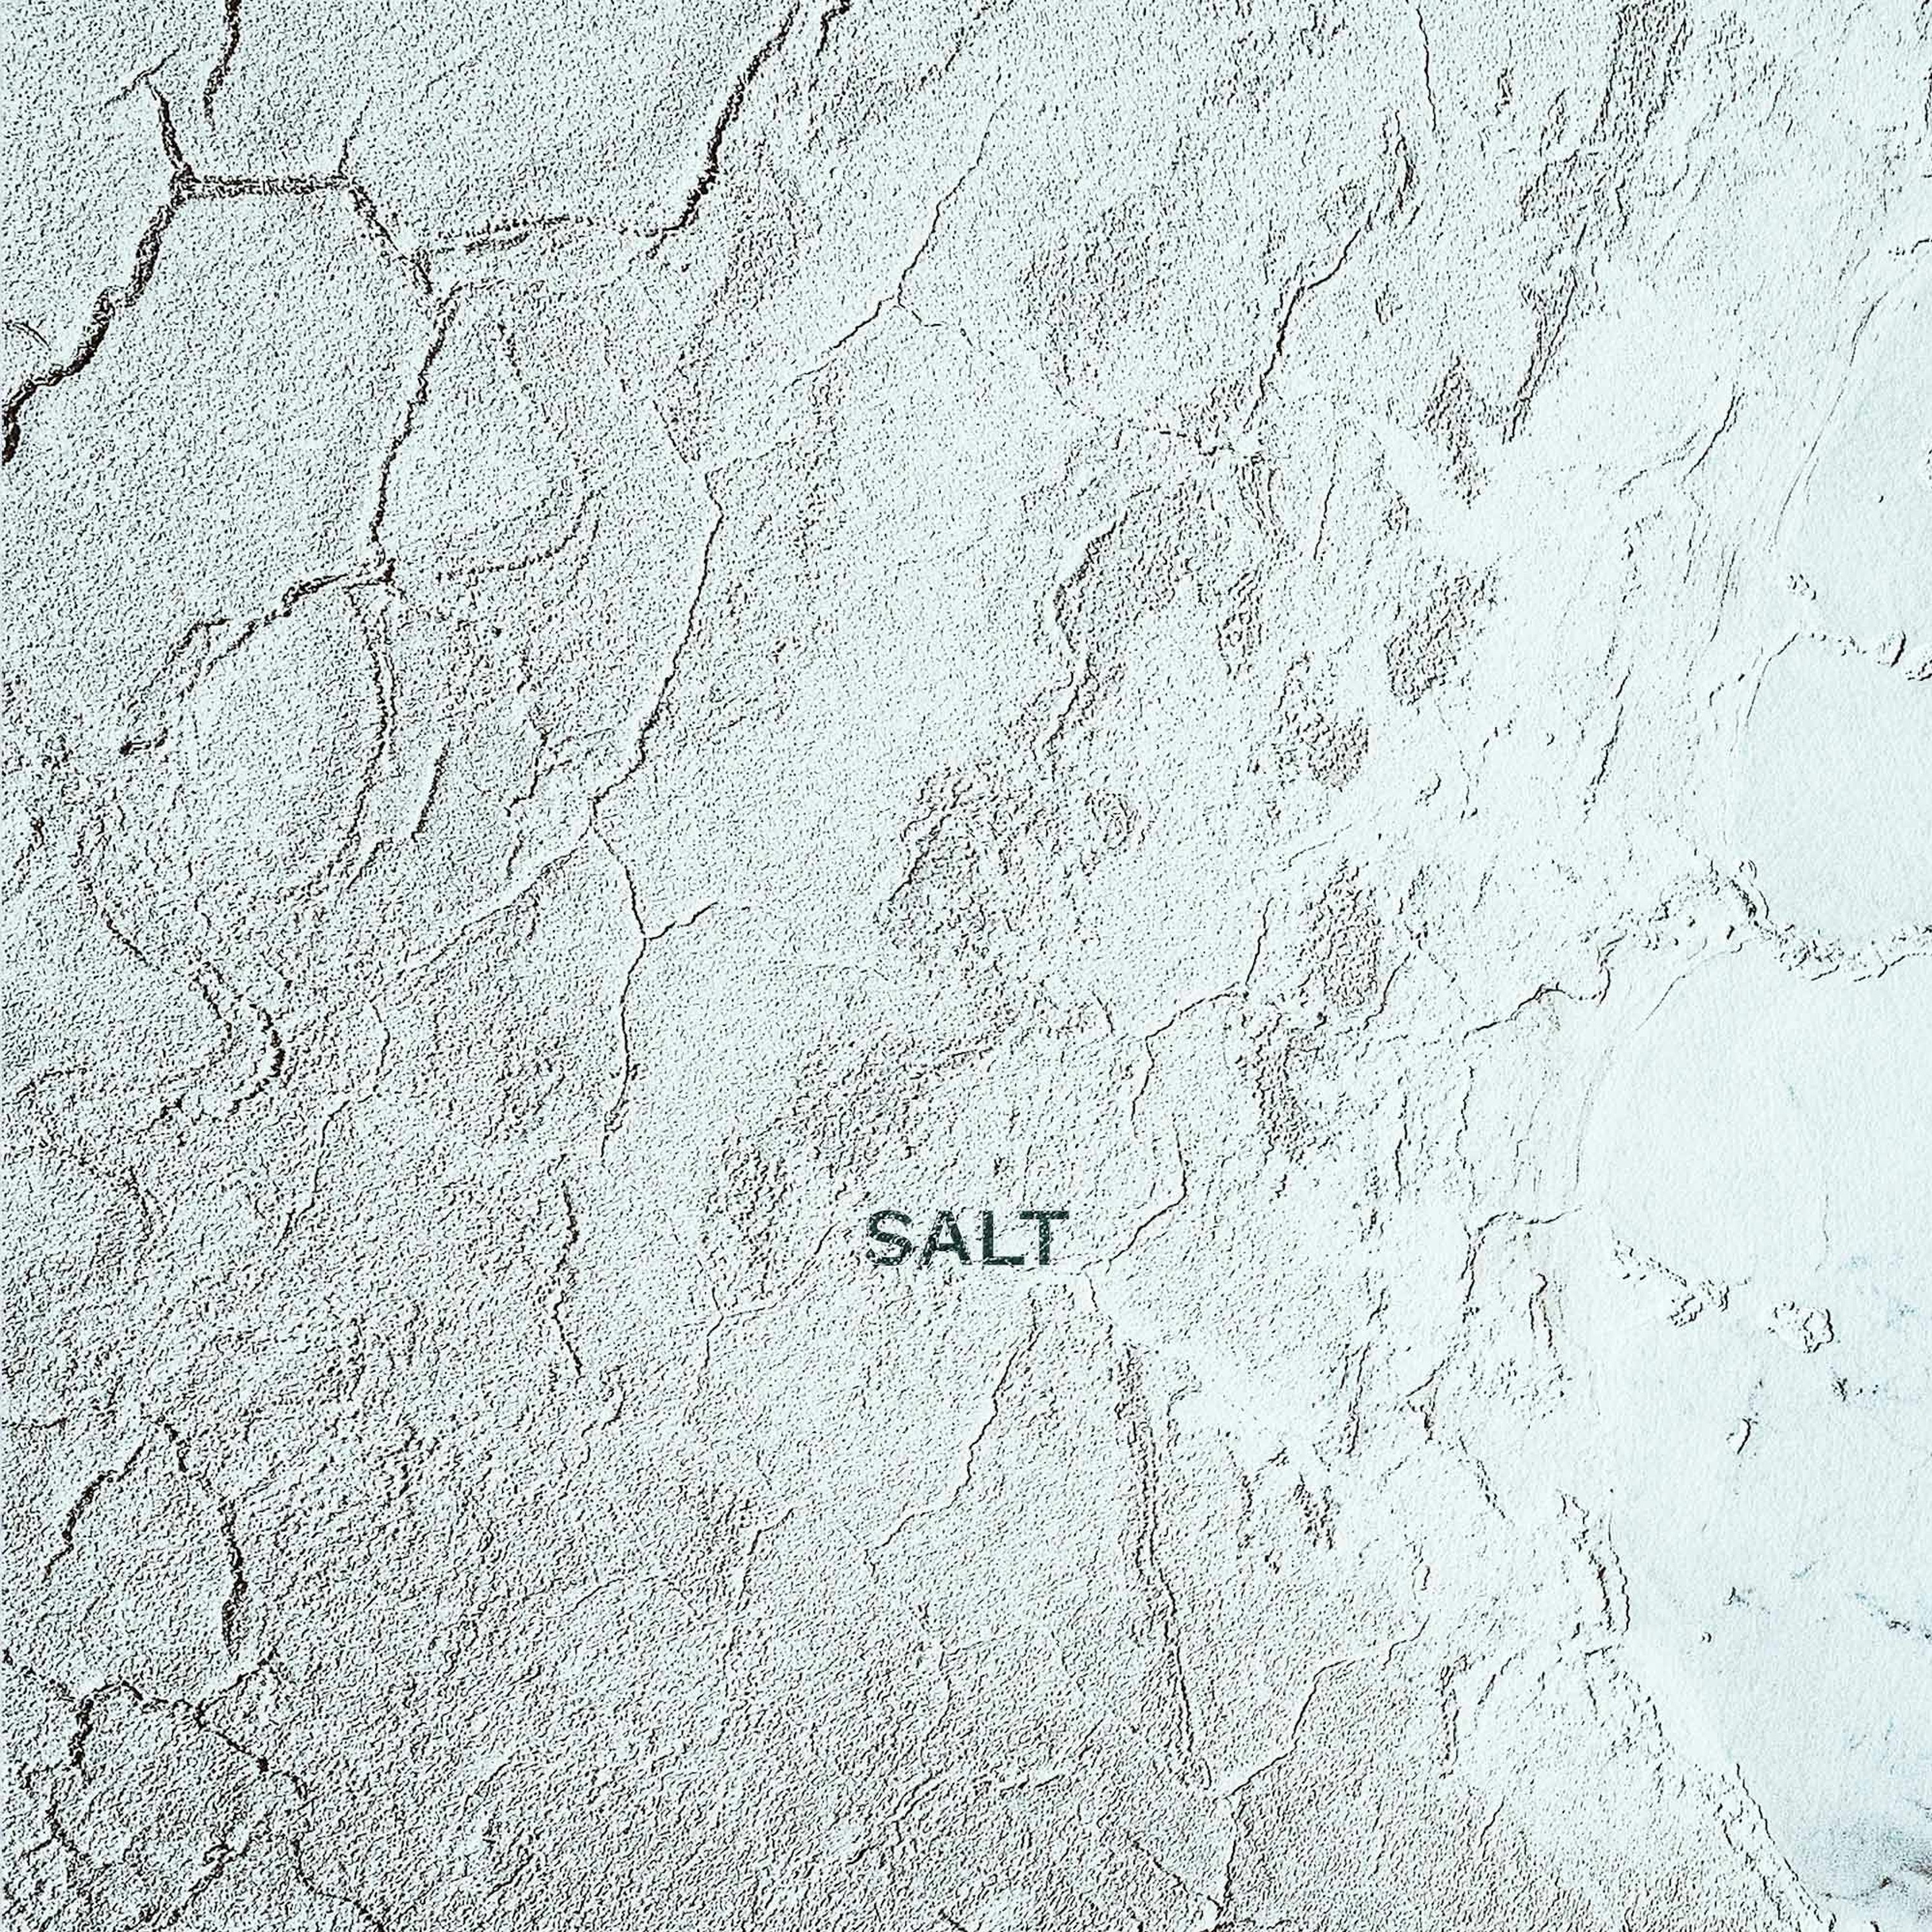 ’Salt’ / Neil Dawson